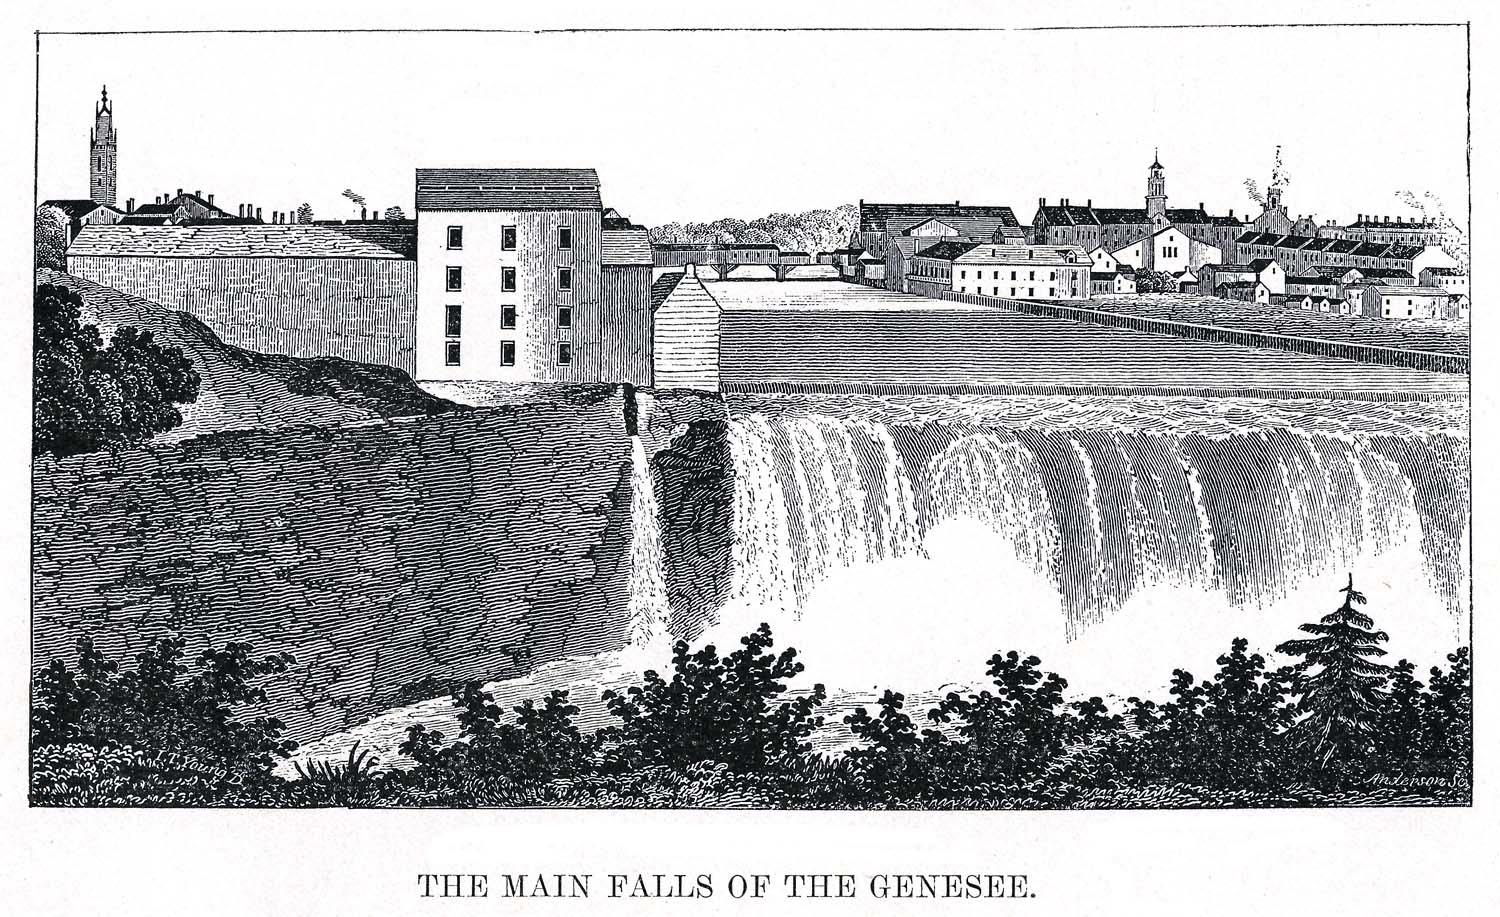 Upper Falls - 1901